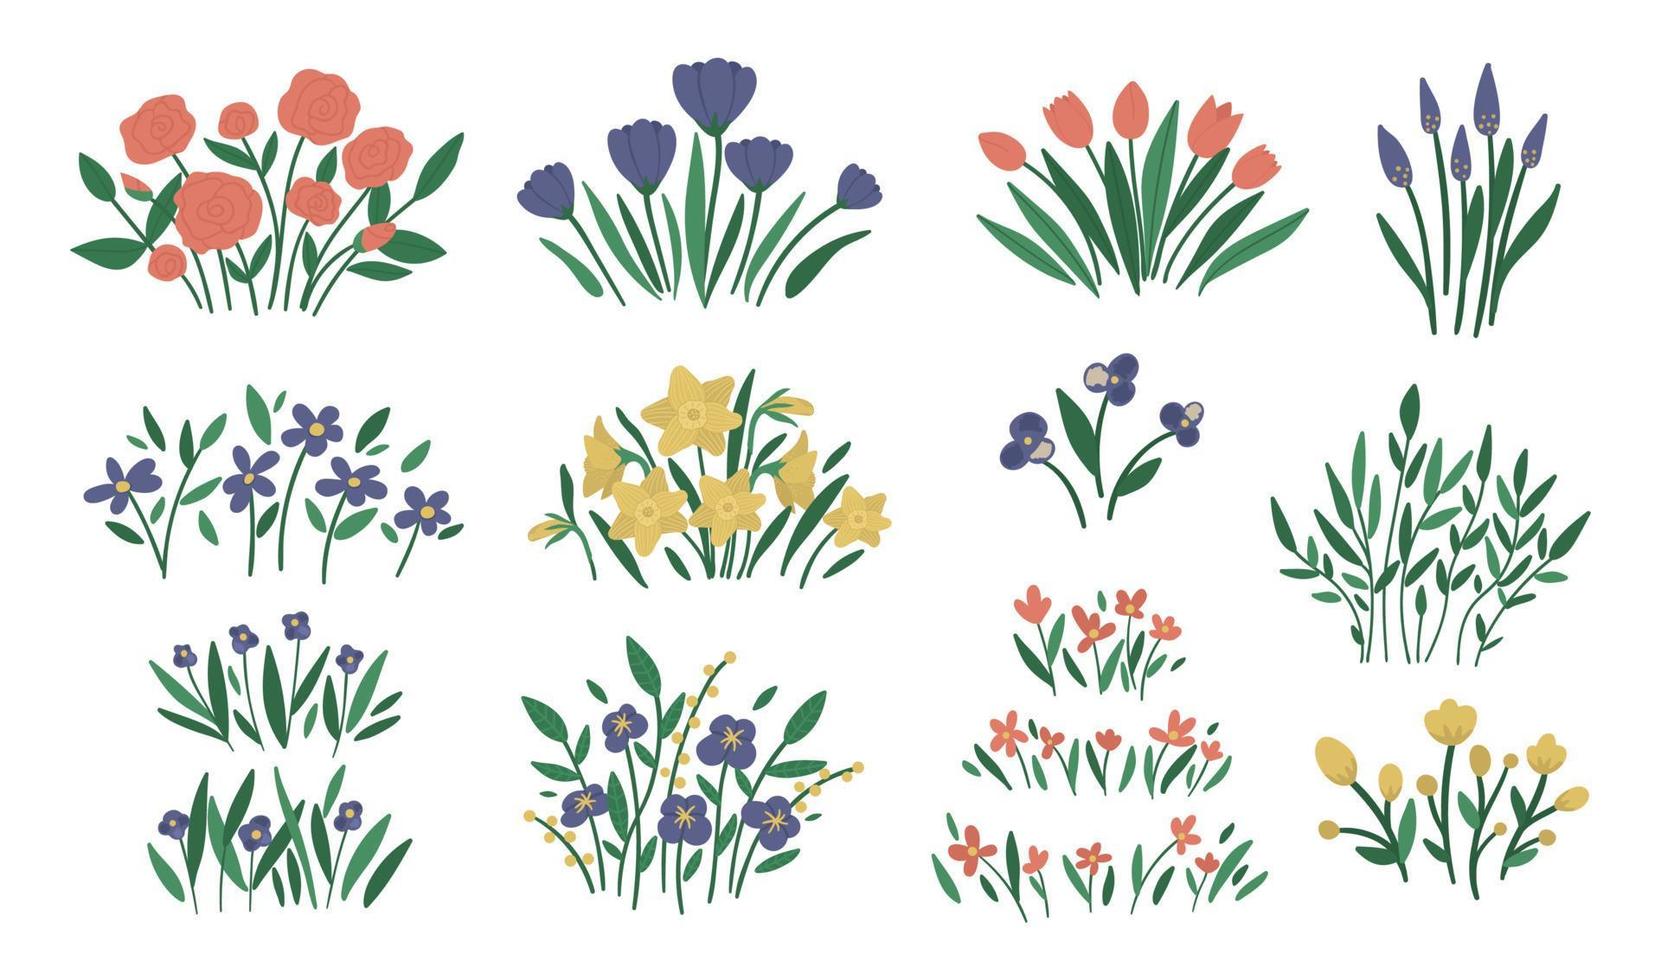 vektor illustration av olika blomsterarrangemang. trädgård dekorativa växter buketter. samling av vackra vår- och sommarörter och blommor.